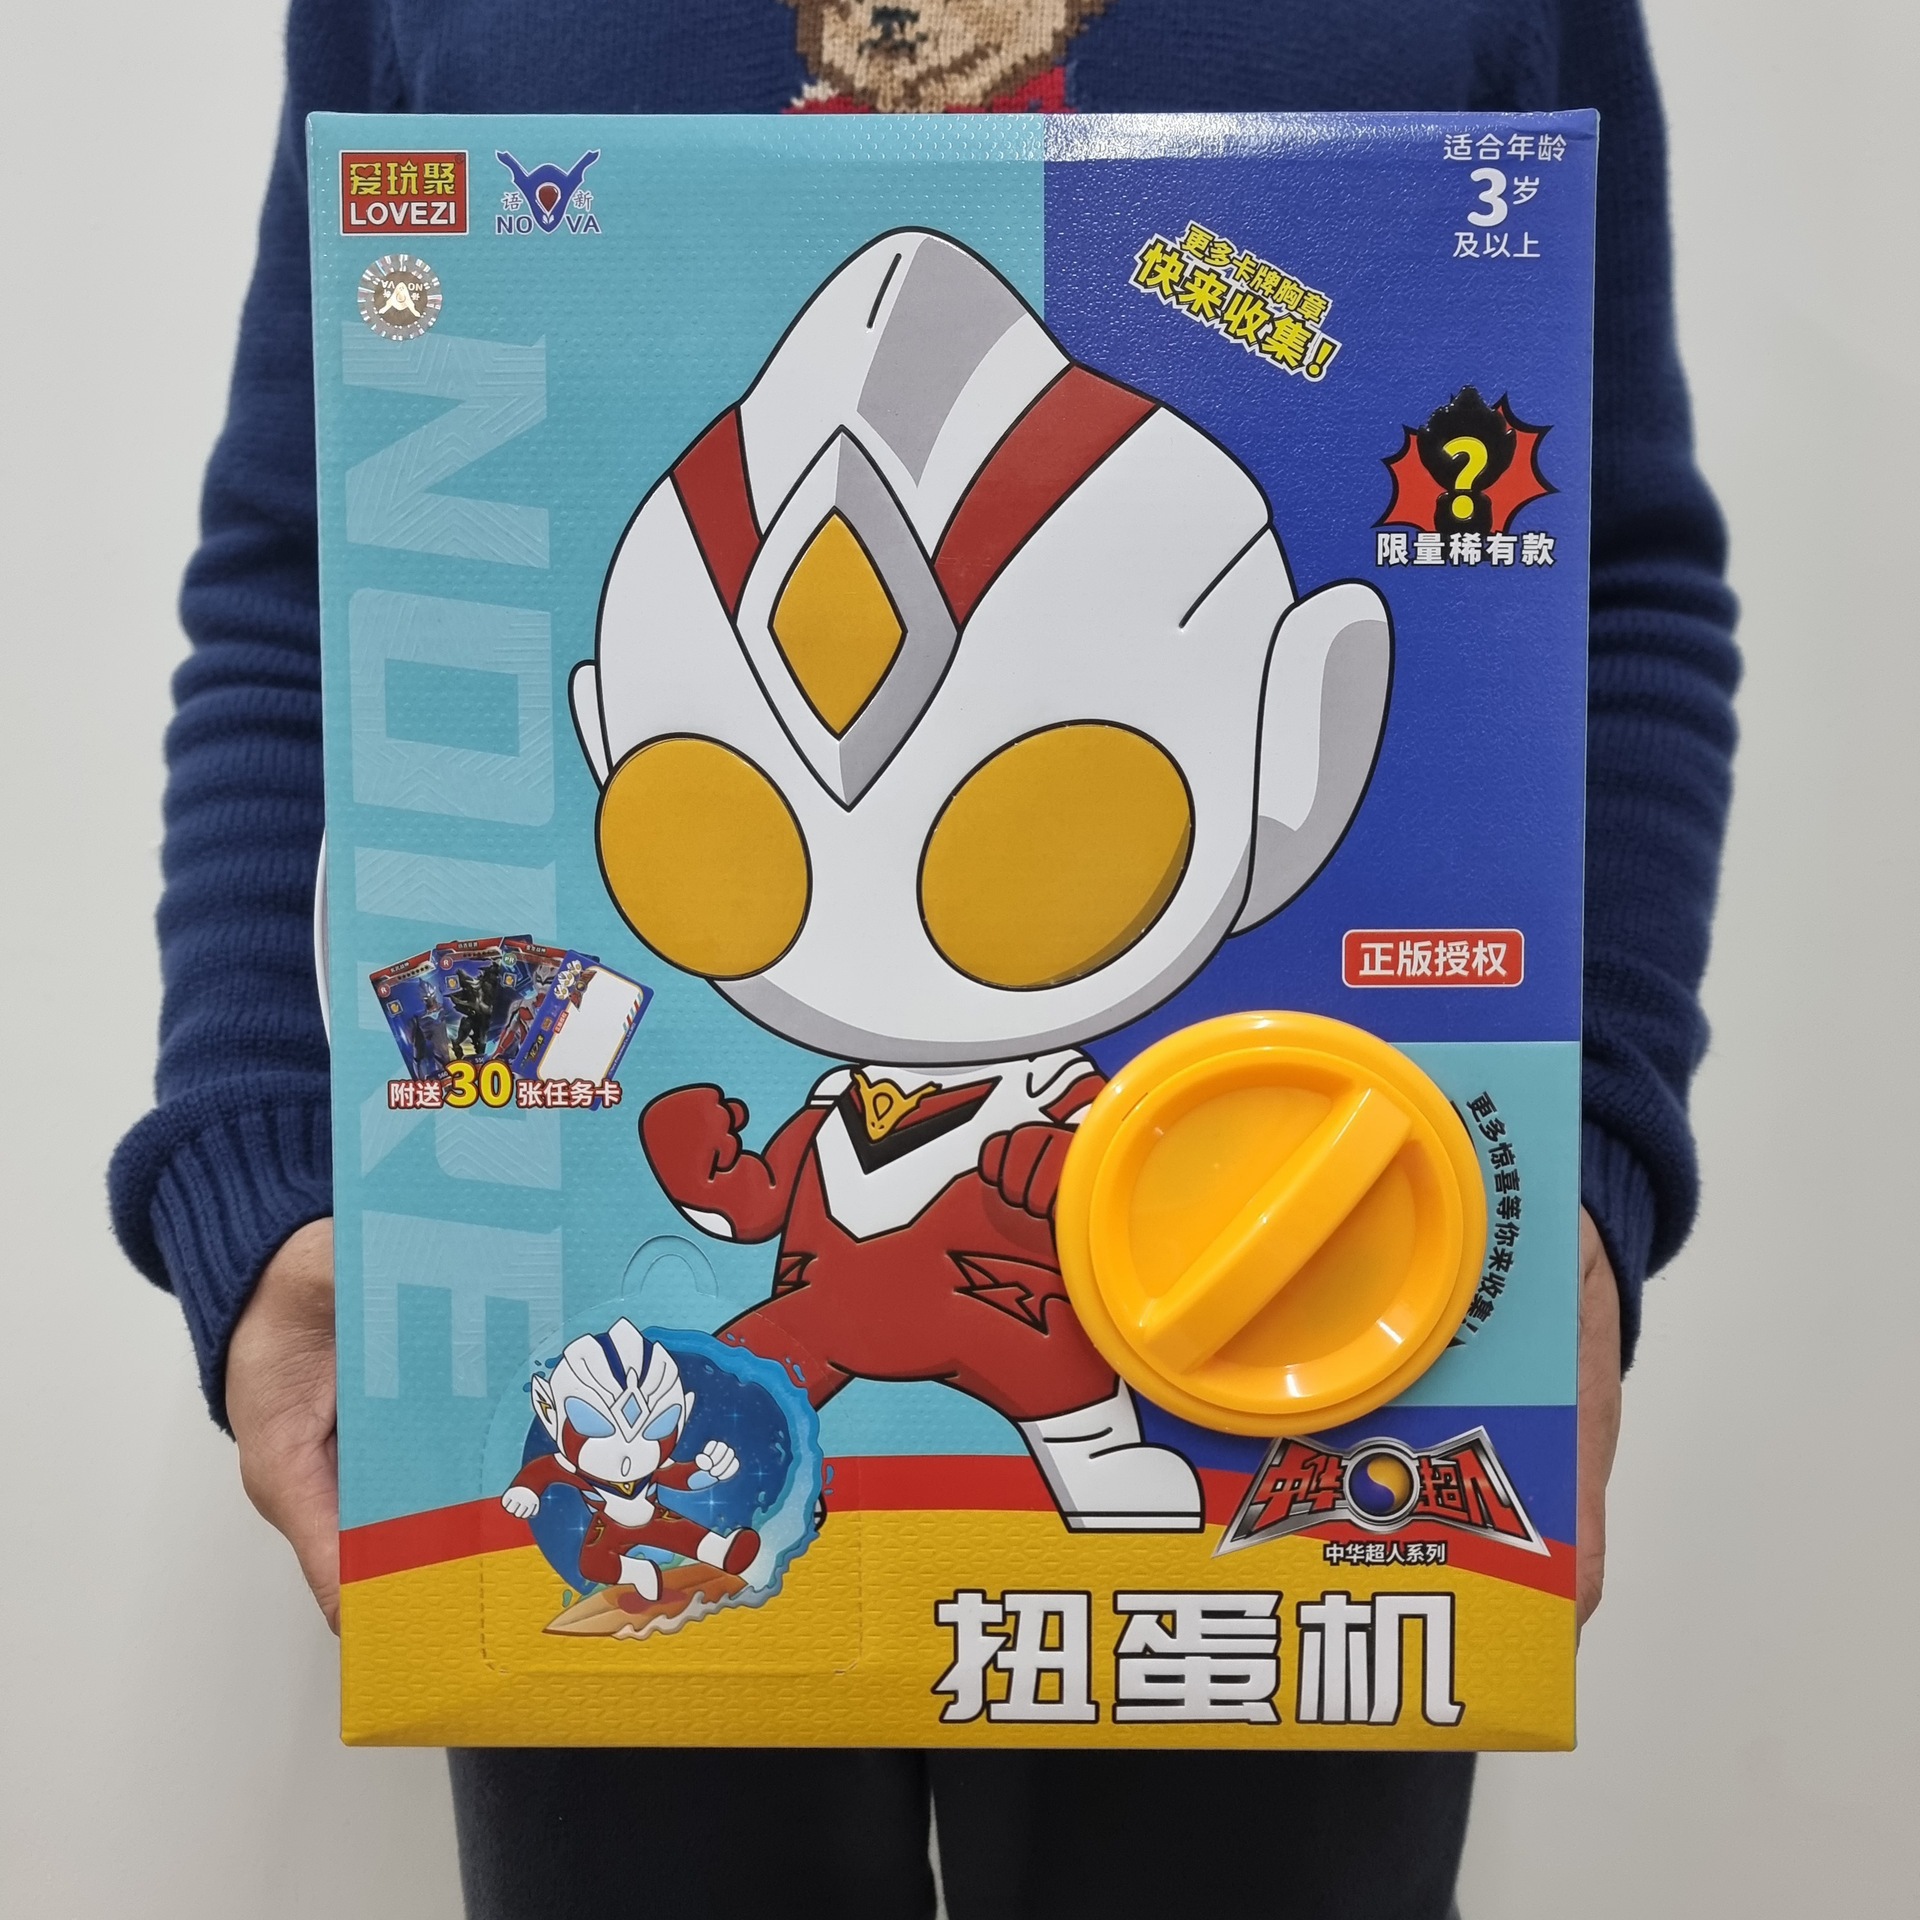 正版授权中华超人扭蛋机儿童家用男孩超人怪兽盲盒扭蛋娃娃机玩具